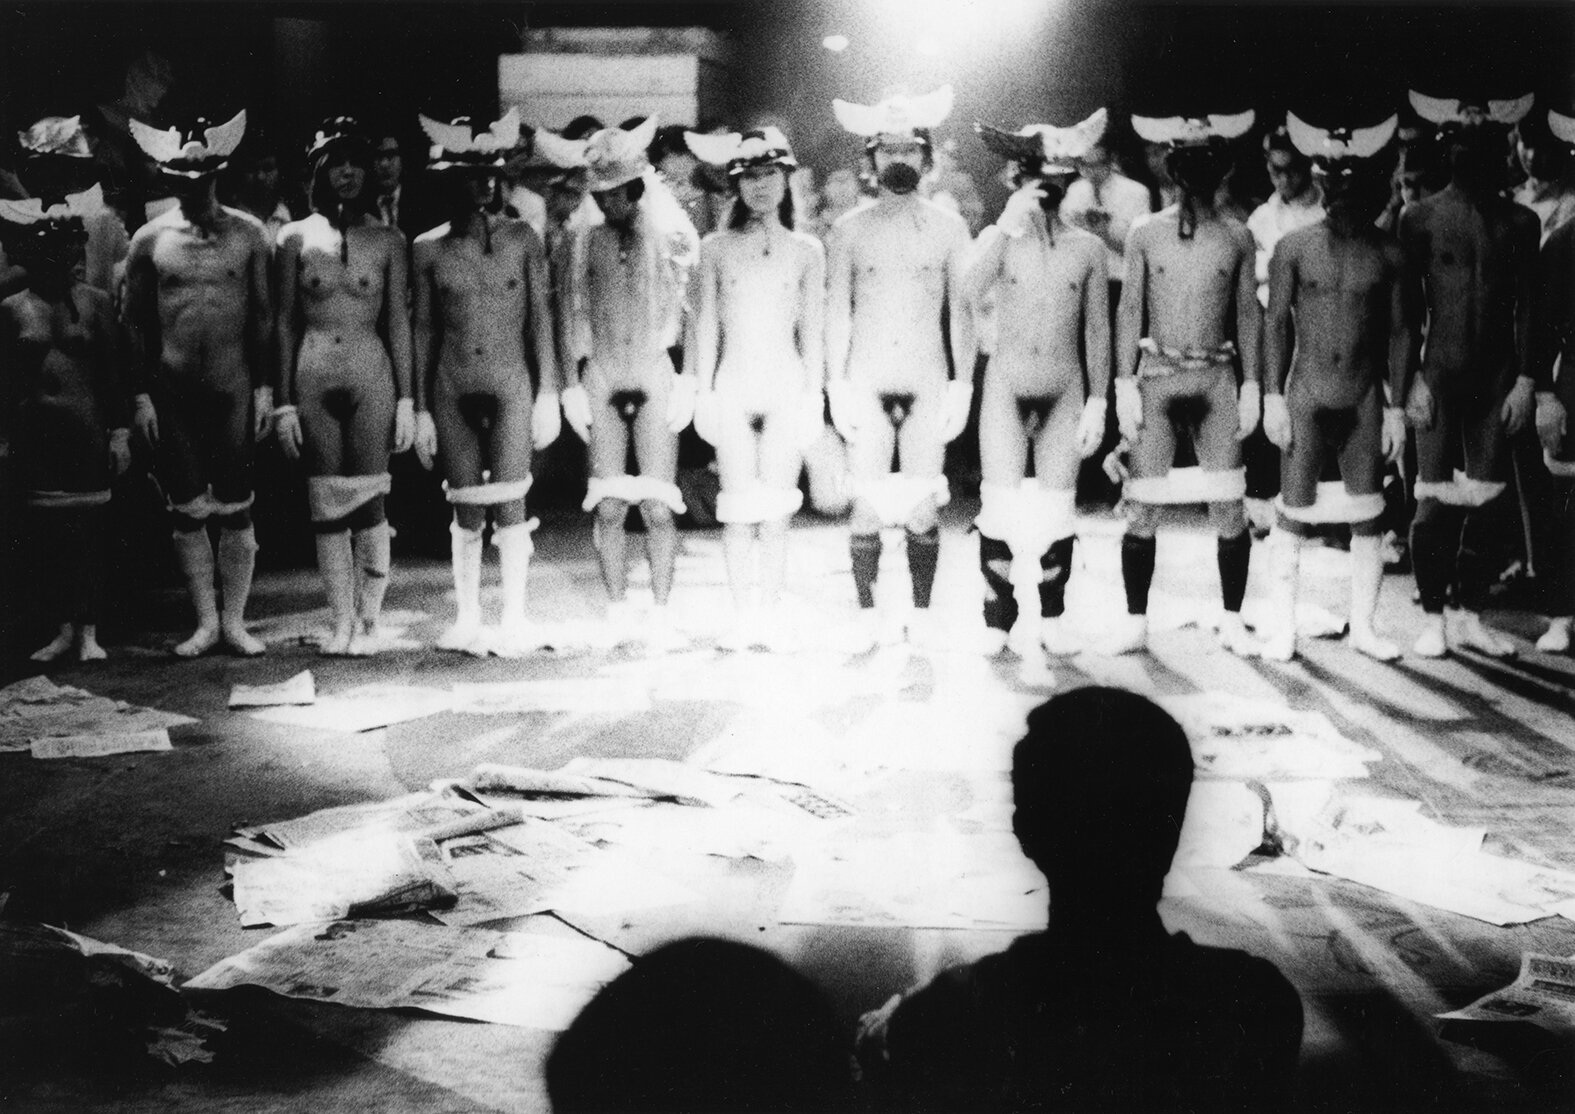  [fig. 9] 万博粉砕ブラック・フェスティバル（池袋アートシアター、1969年6月8日、撮影：北出幸男、©ゼロ次元・加藤好弘アーカイヴ） 